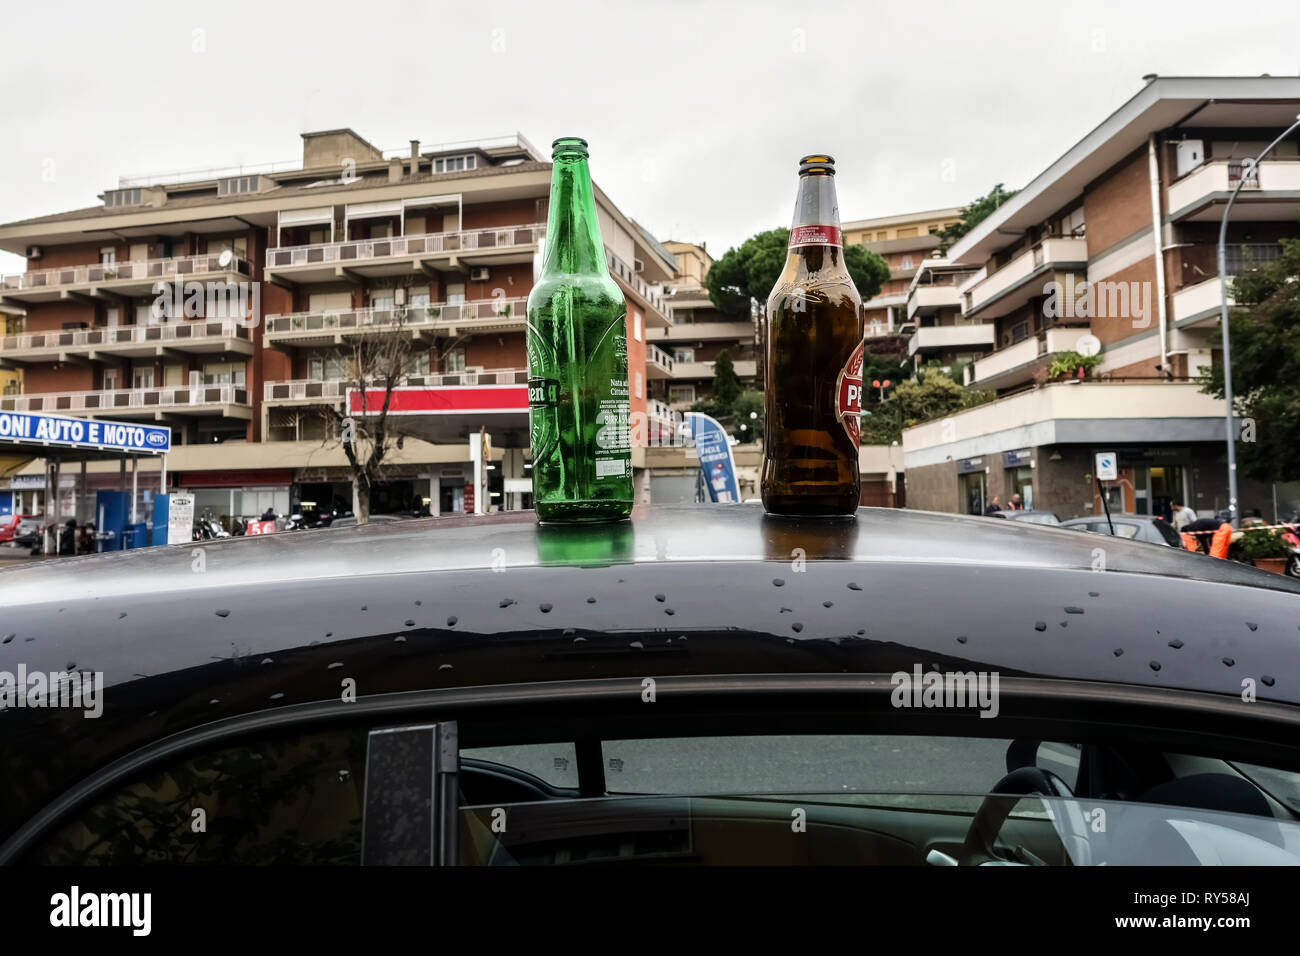 Deux bouteilles de bière vides sur le toit d'une voiture parcelées dans la rue. Notion de dépendance à l'alcool. Arrière-plan flou. Rome, Italie, Europe, Union européenne, UE. Banque D'Images